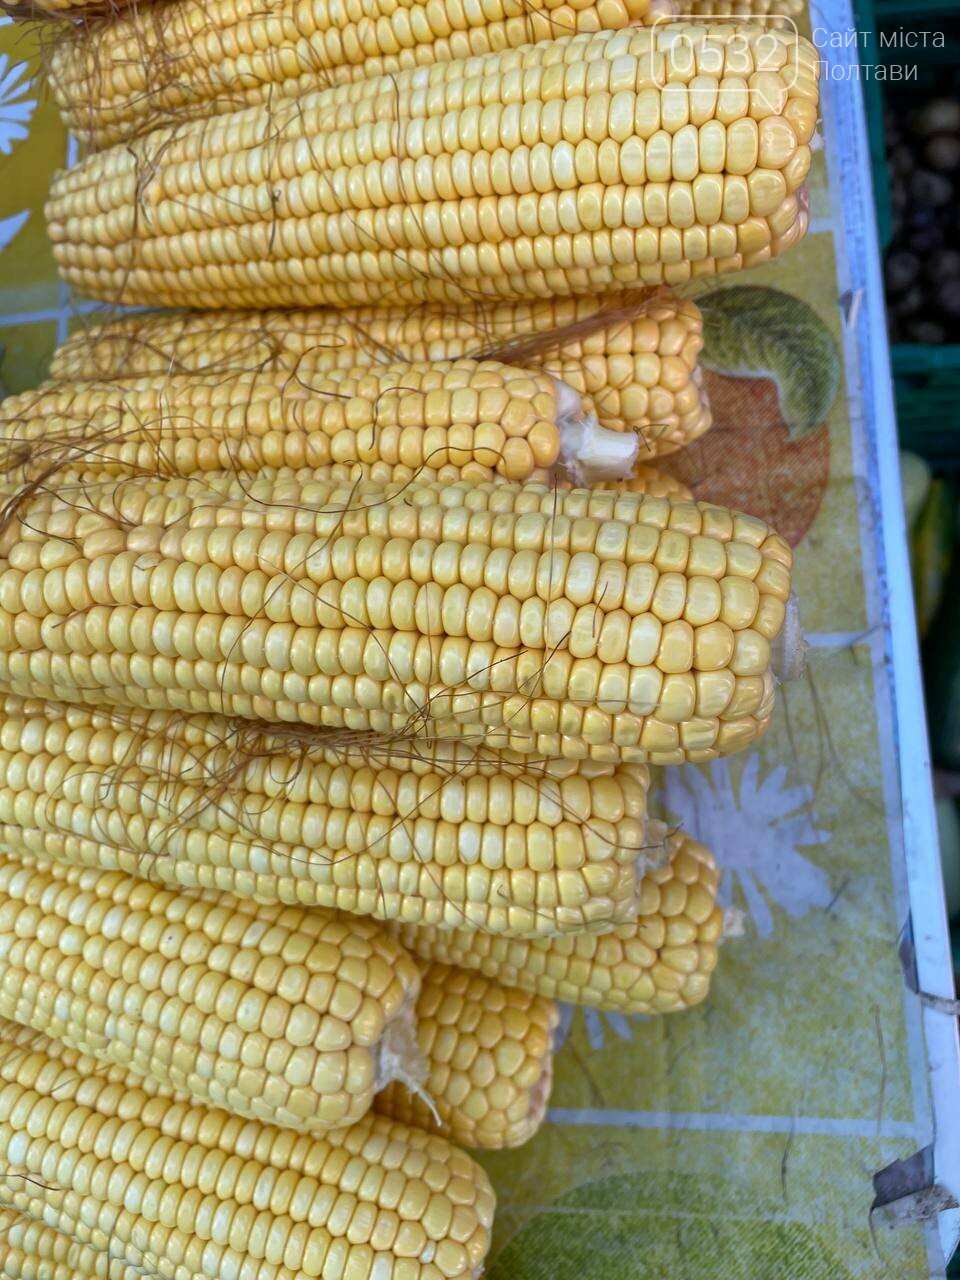 У Полтаві на «Хитрому» ринку кавун продають по 10 грн/кг, качан кукурудзу по 3 грн, а за кілограм картоплі "просять" 5 грн